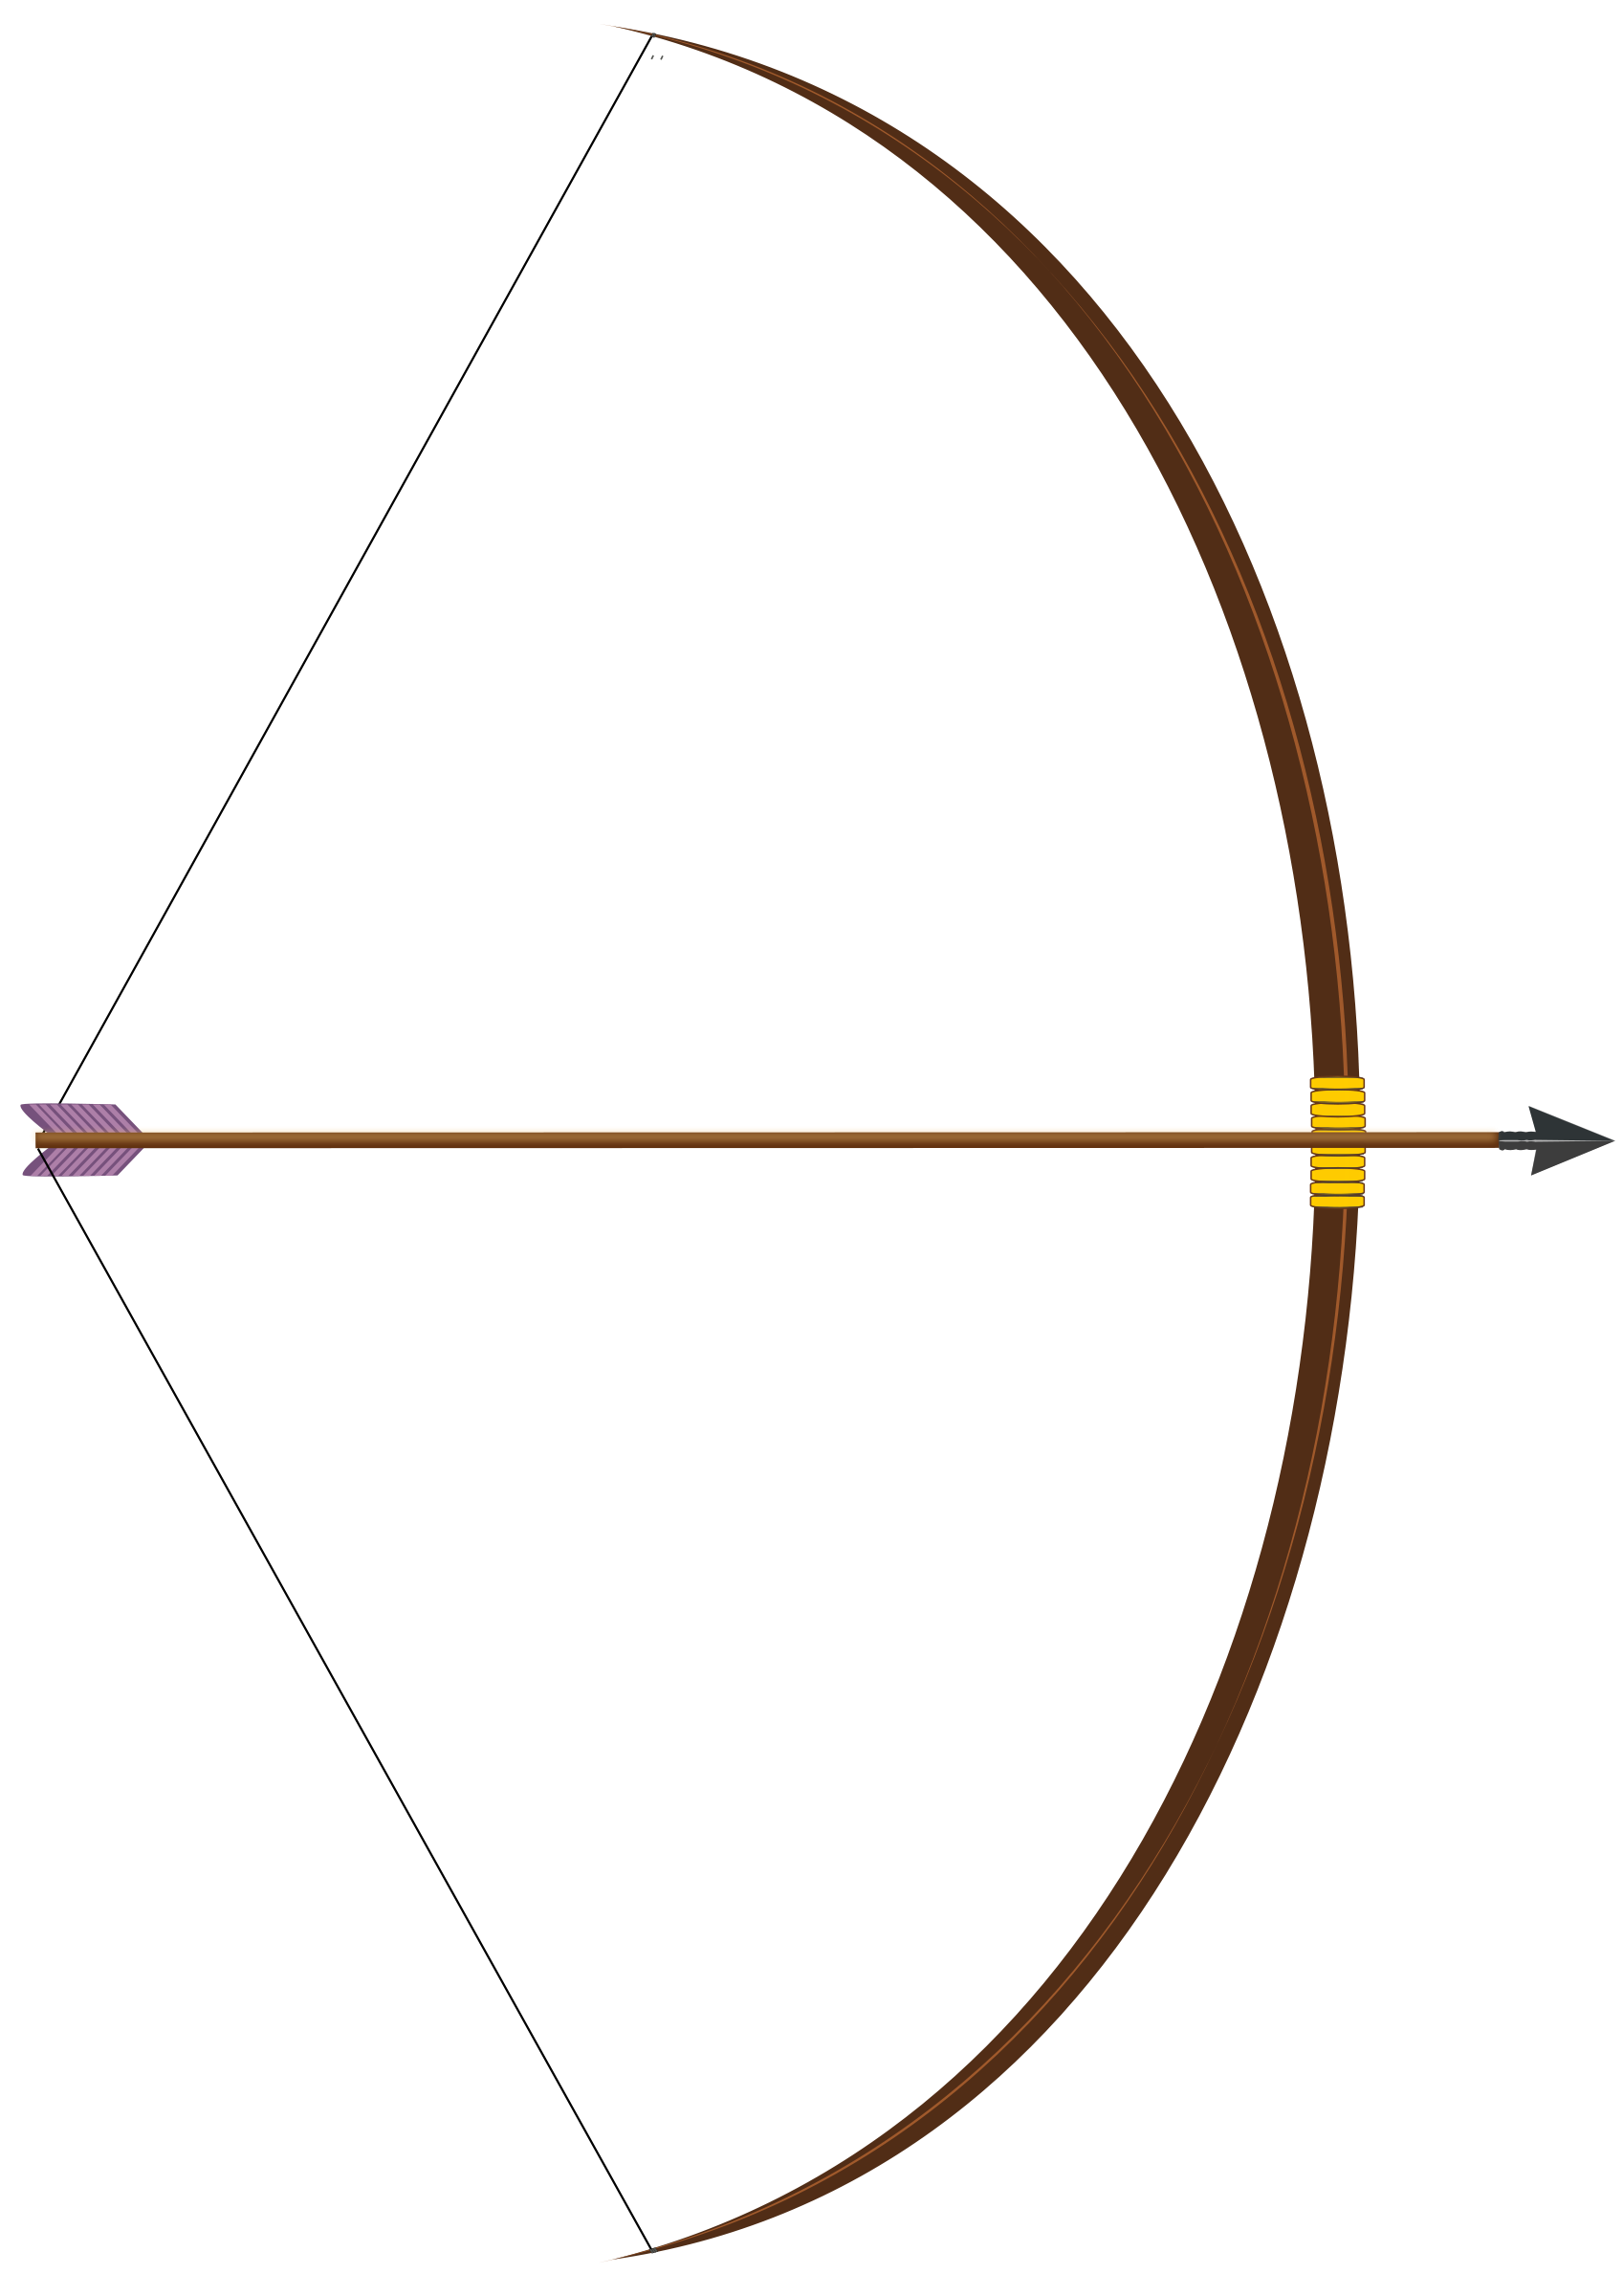 Clipart - bow with arrow